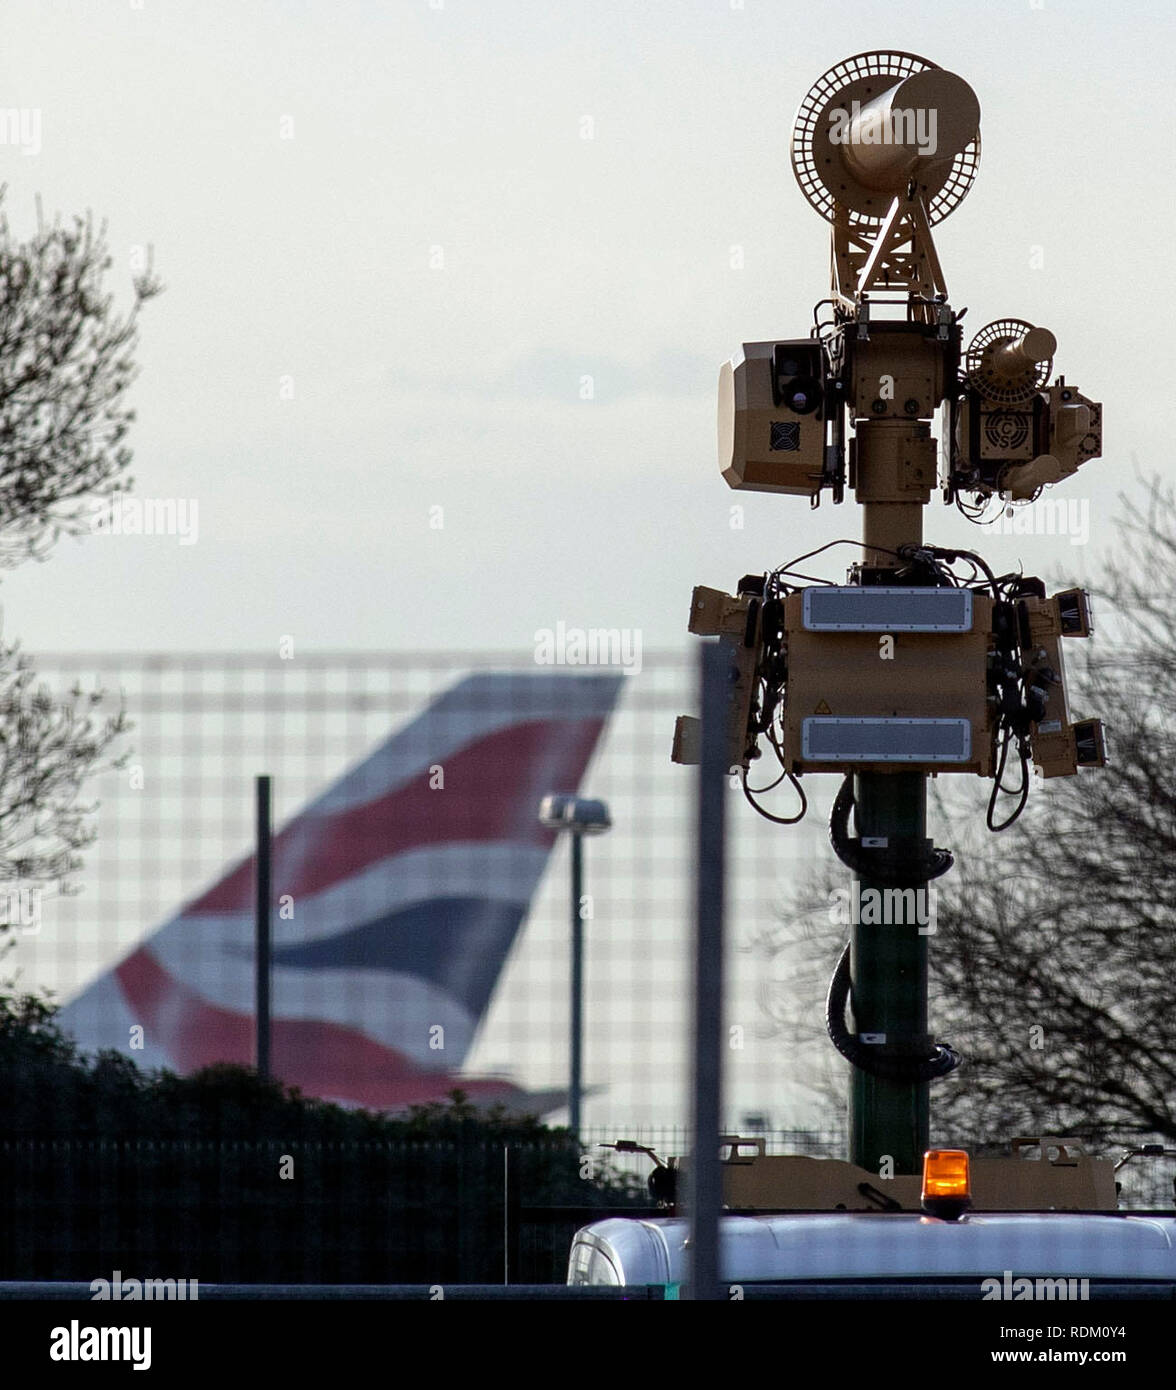 Los AUDS (Anti-UAV) del sistema de defensa system, cual puede detectar, rastrear y tierra de aviones teledirigidos, desplegados en parte superior de un vehículo en el de Heathrow